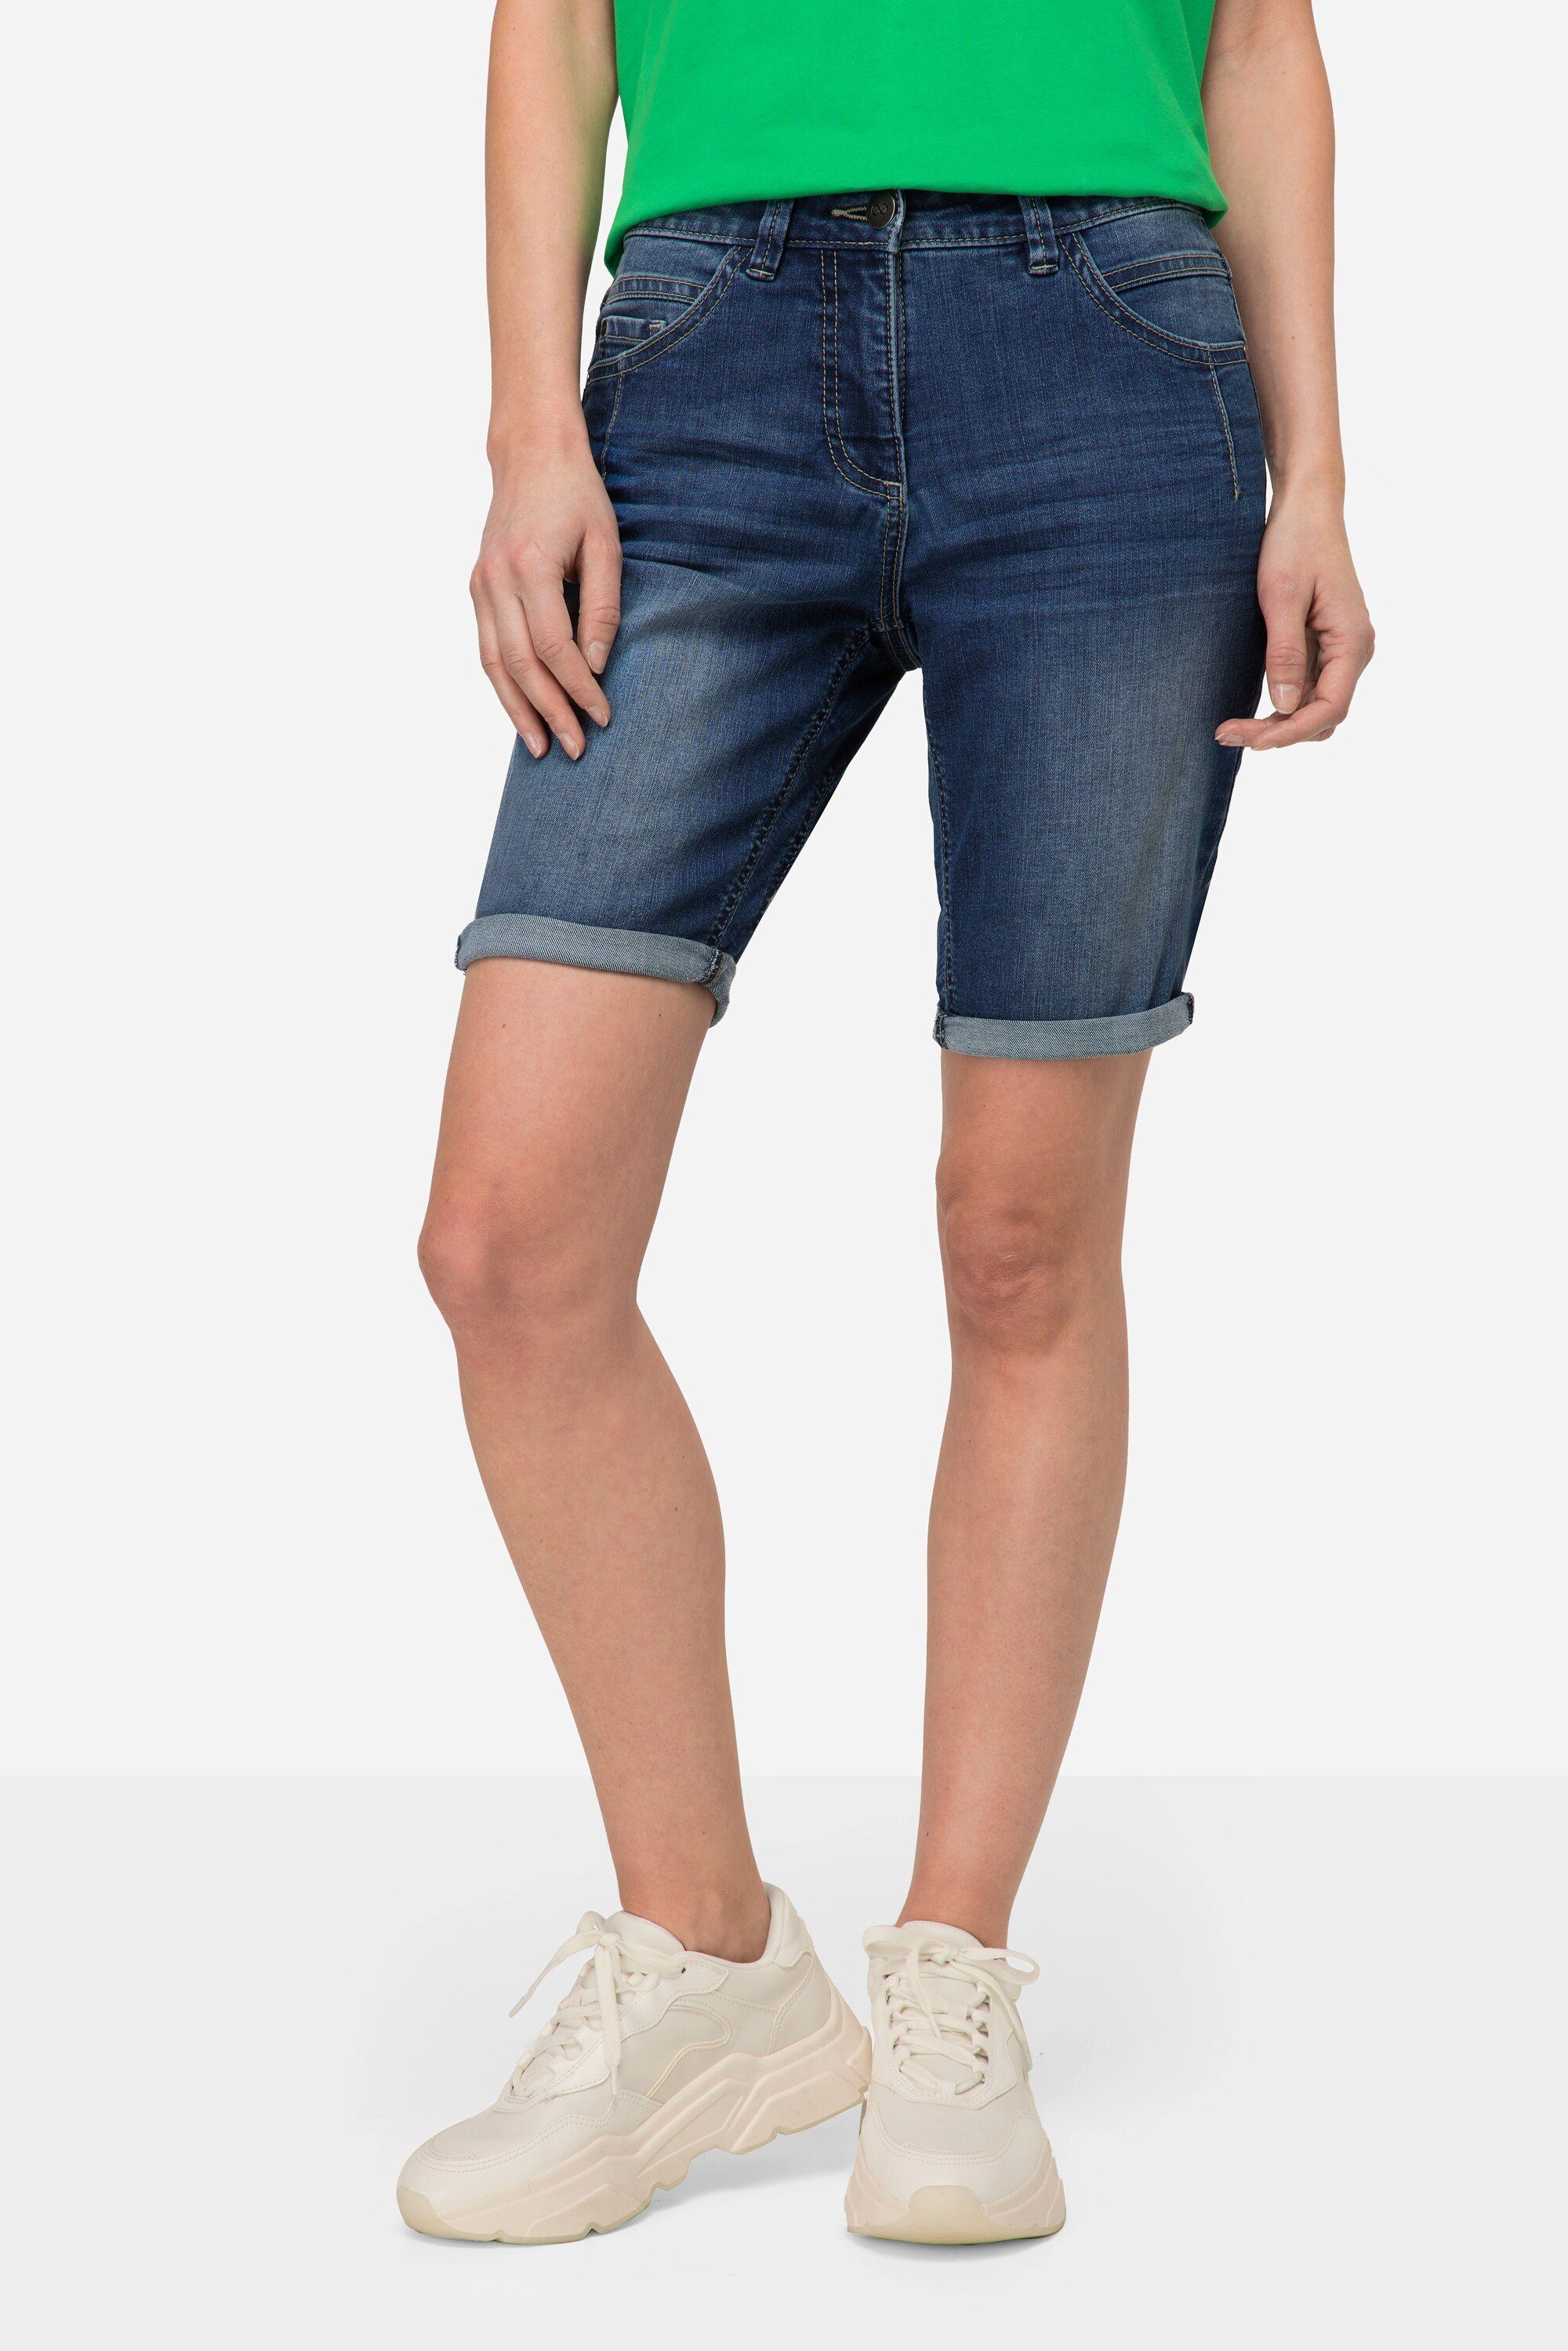 Laurasøn Regular-fit-Jeans Jeans-Shorts denim 5-Pocket blue Elastikbund